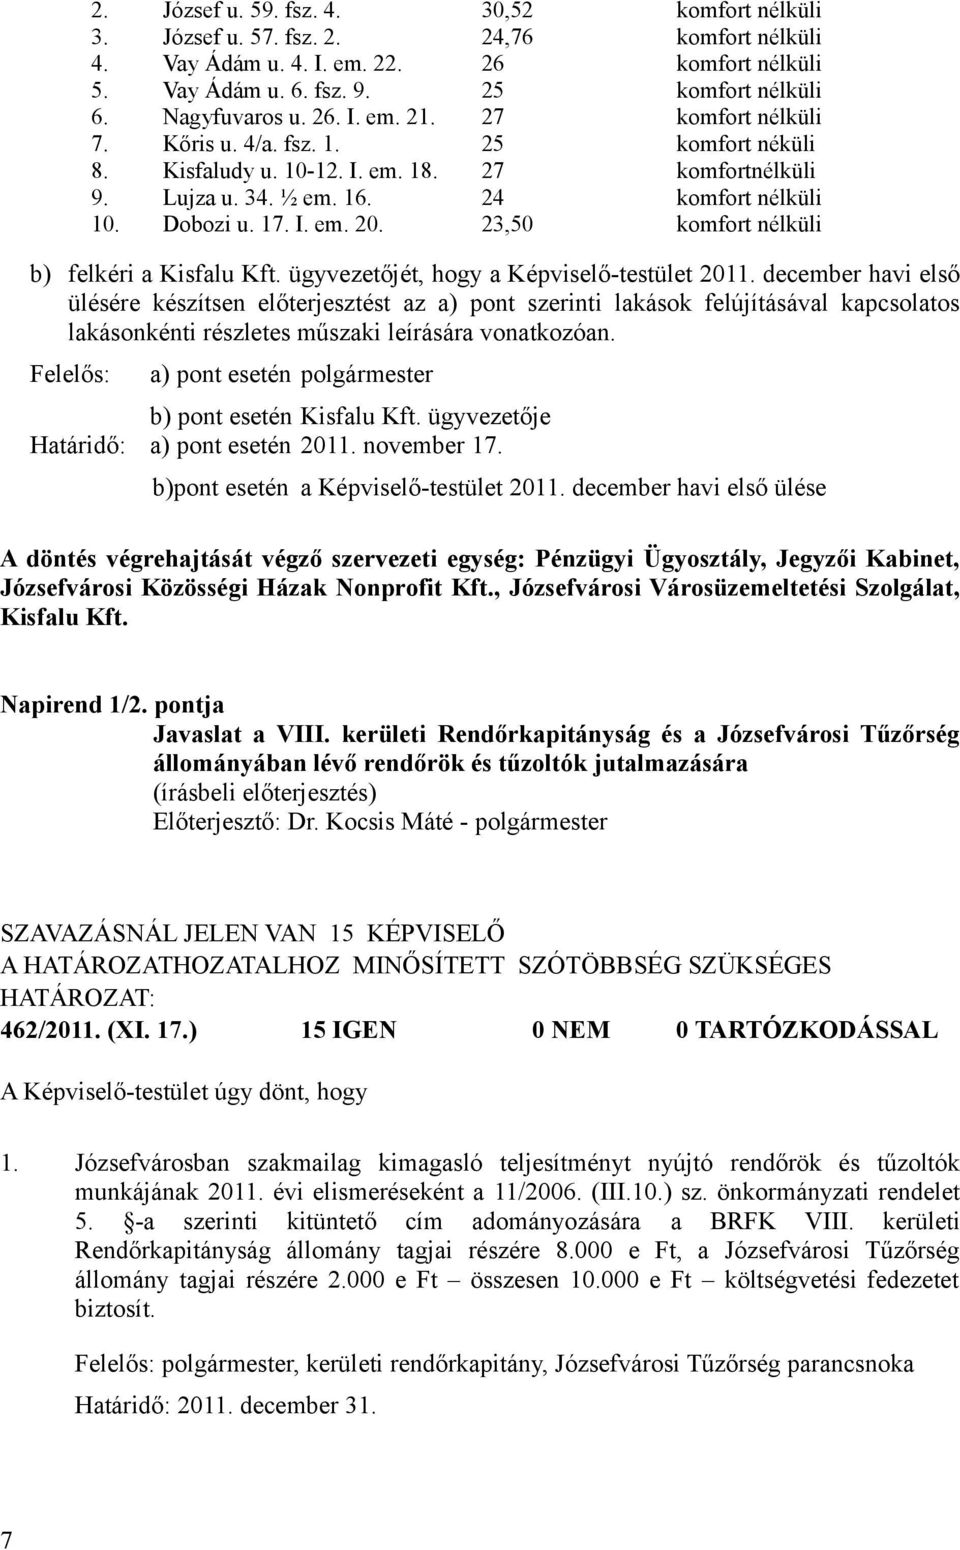 Dobozi u. 17. I. em. 20. 23,50 komfort nélküli b) felkéri a Kisfalu Kft. ügyvezetőjét, hogy a Képviselő-testület 2011.